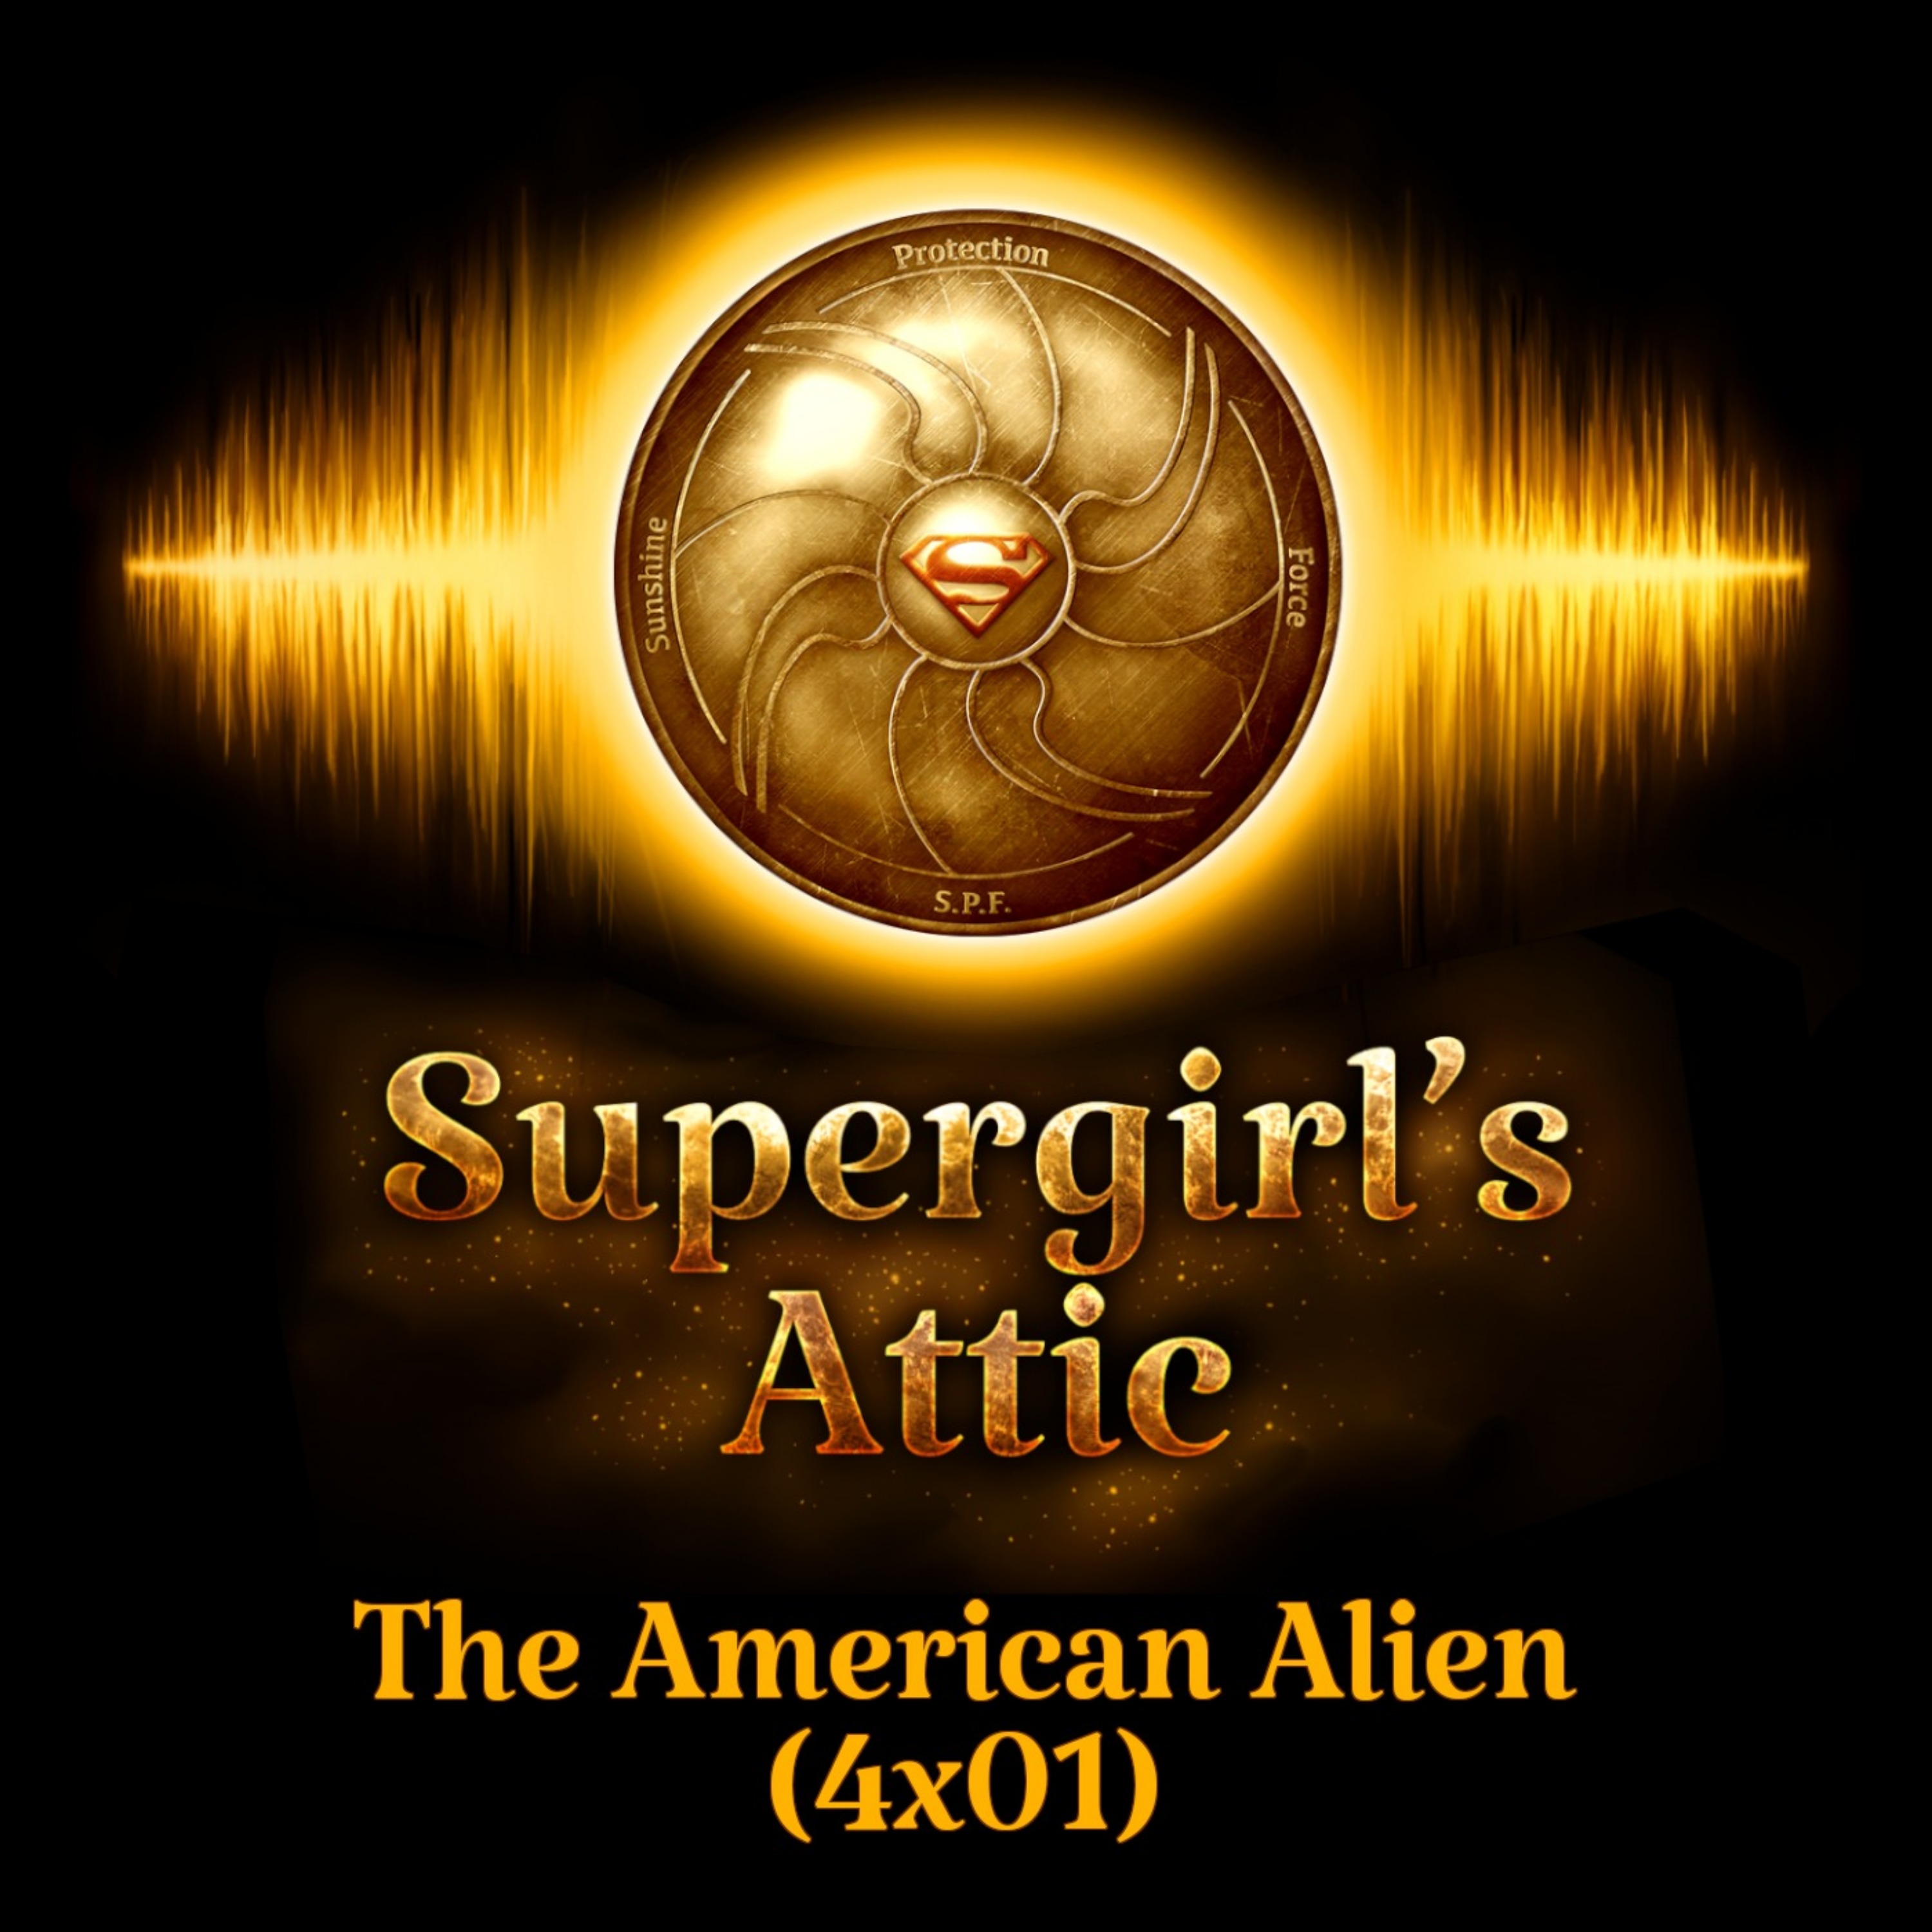 The American Alien (4x01)